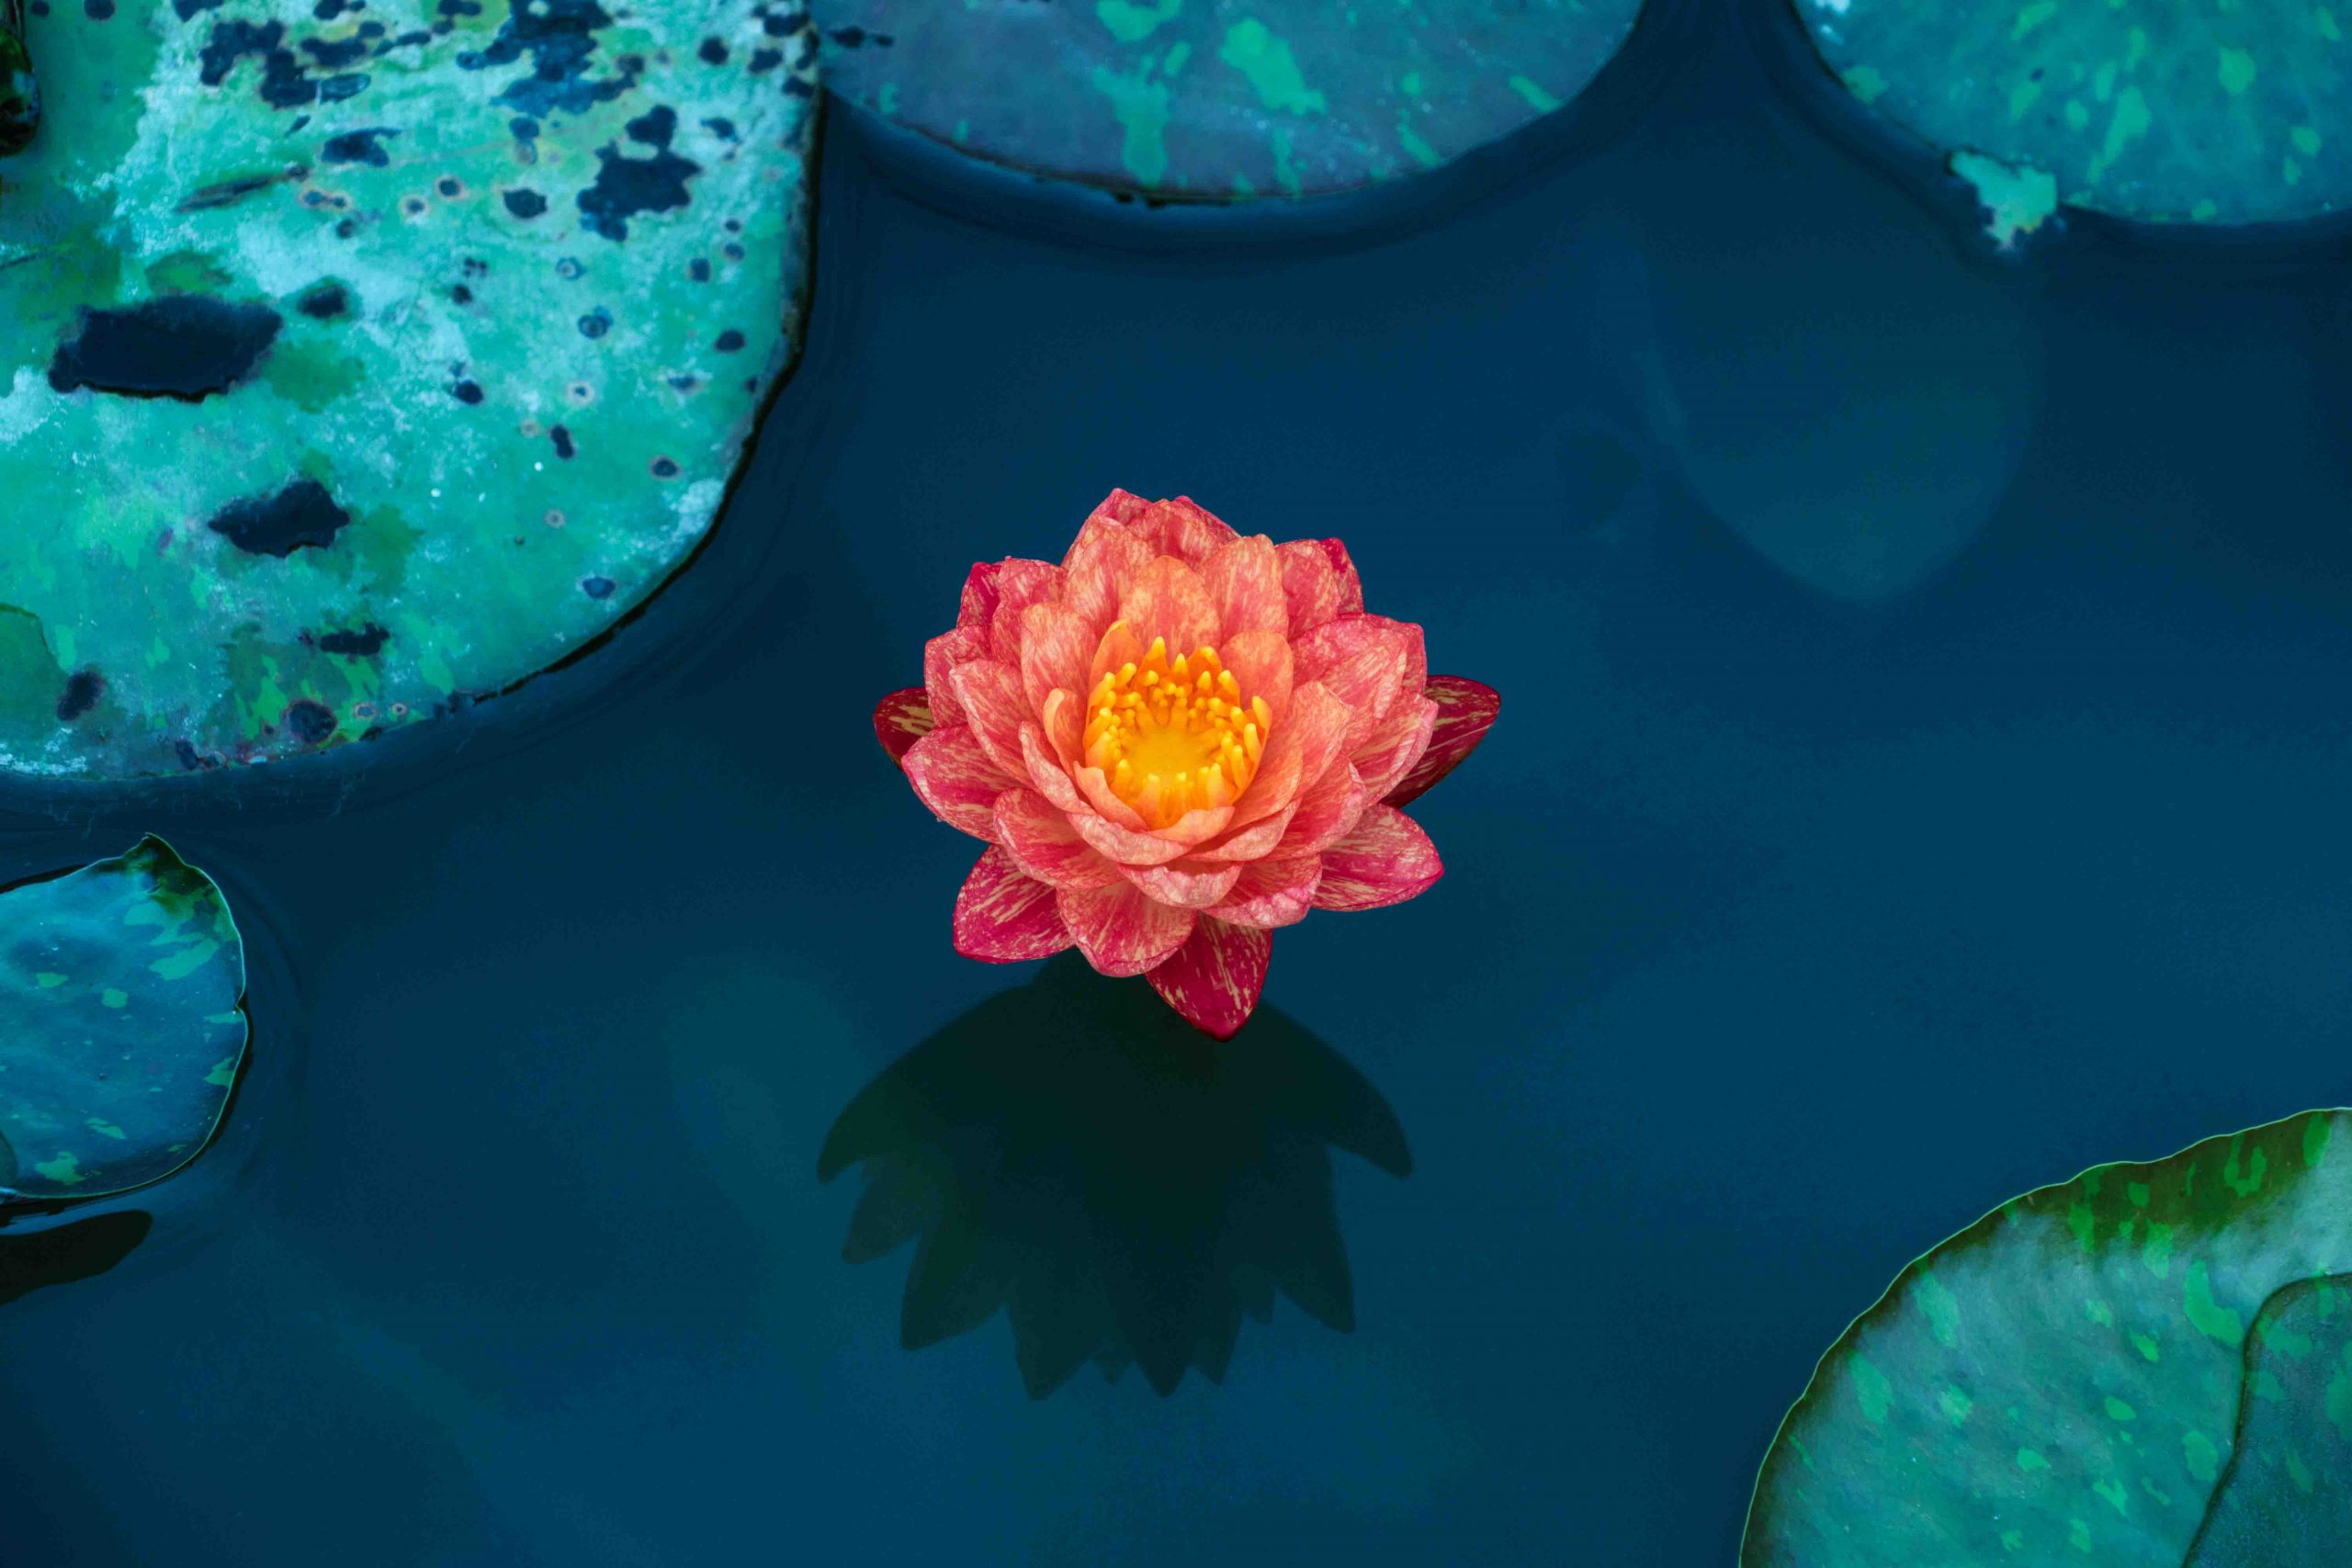 Nam châm hoa sen là một sản phẩm trang trí không thể thiếu cho căn phòng của bạn. Với hình dáng độc đáo, bắt mắt cùng màu sắc hoa sen đỏ rực rỡ, sẽ làm tăng thêm sự sang trọng và lịch sự cho không gian sống của bạn.